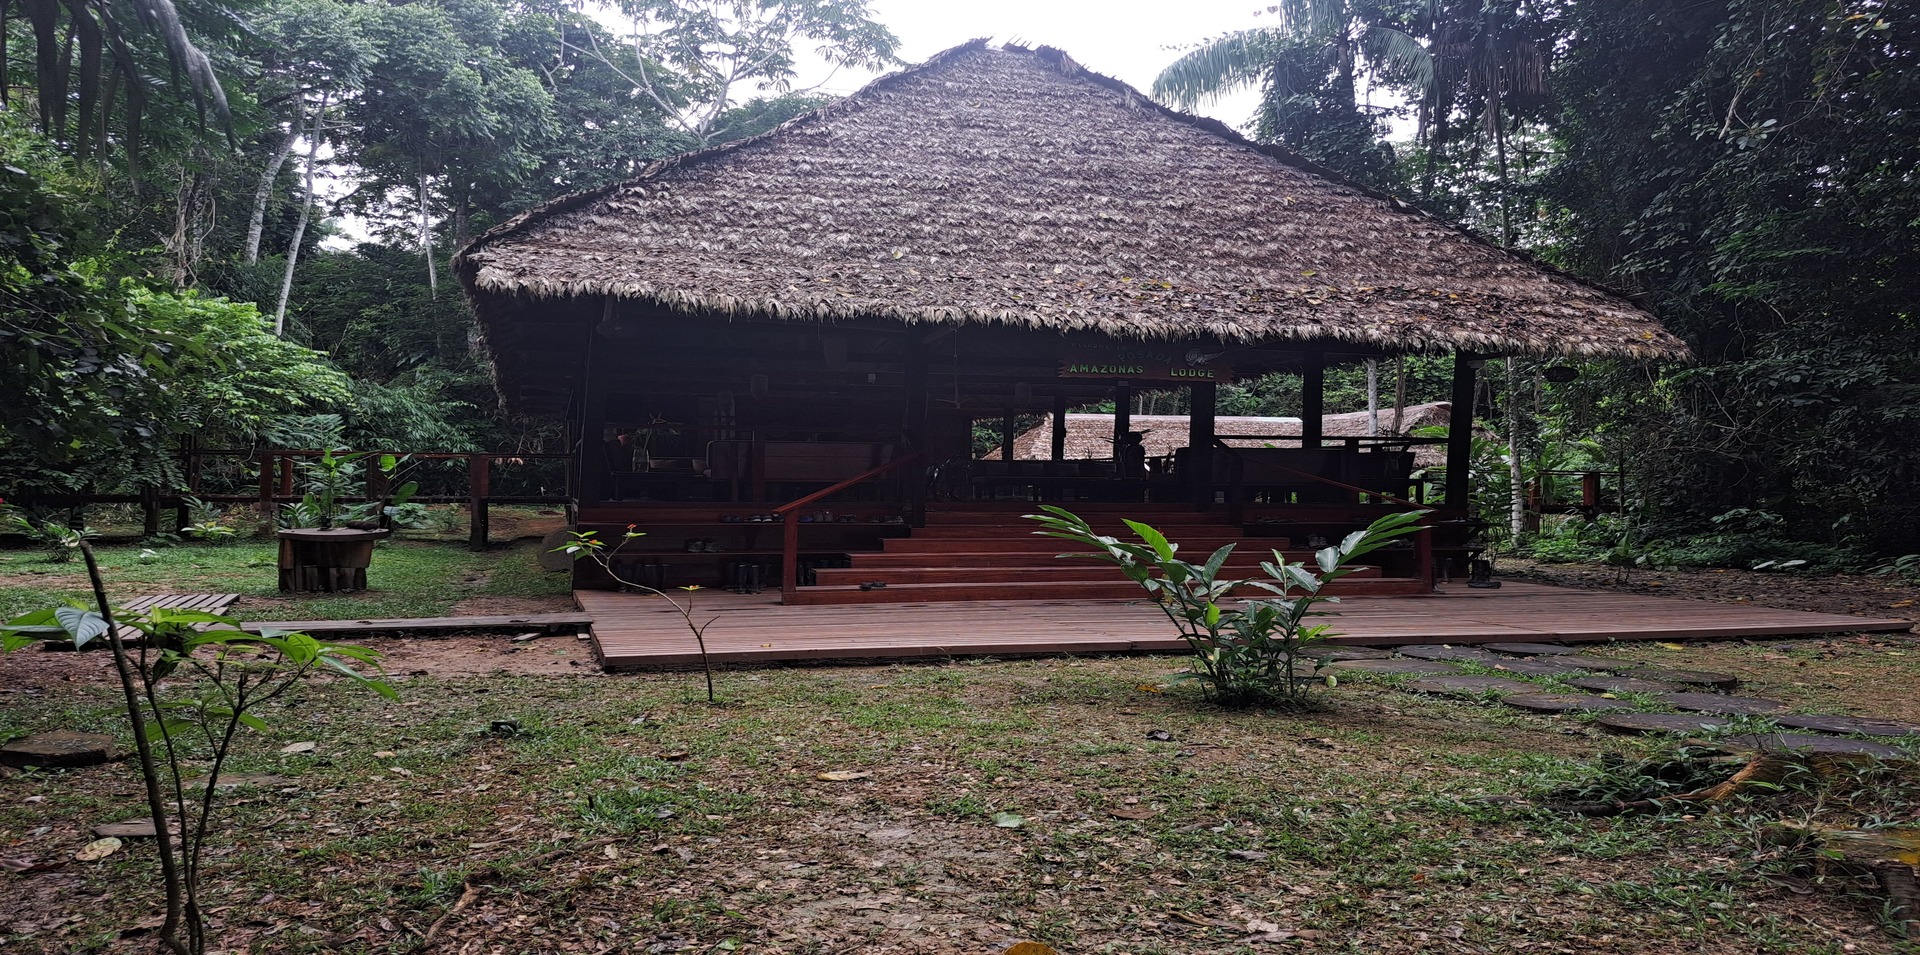 "Posada" in Tambopata National Reserve